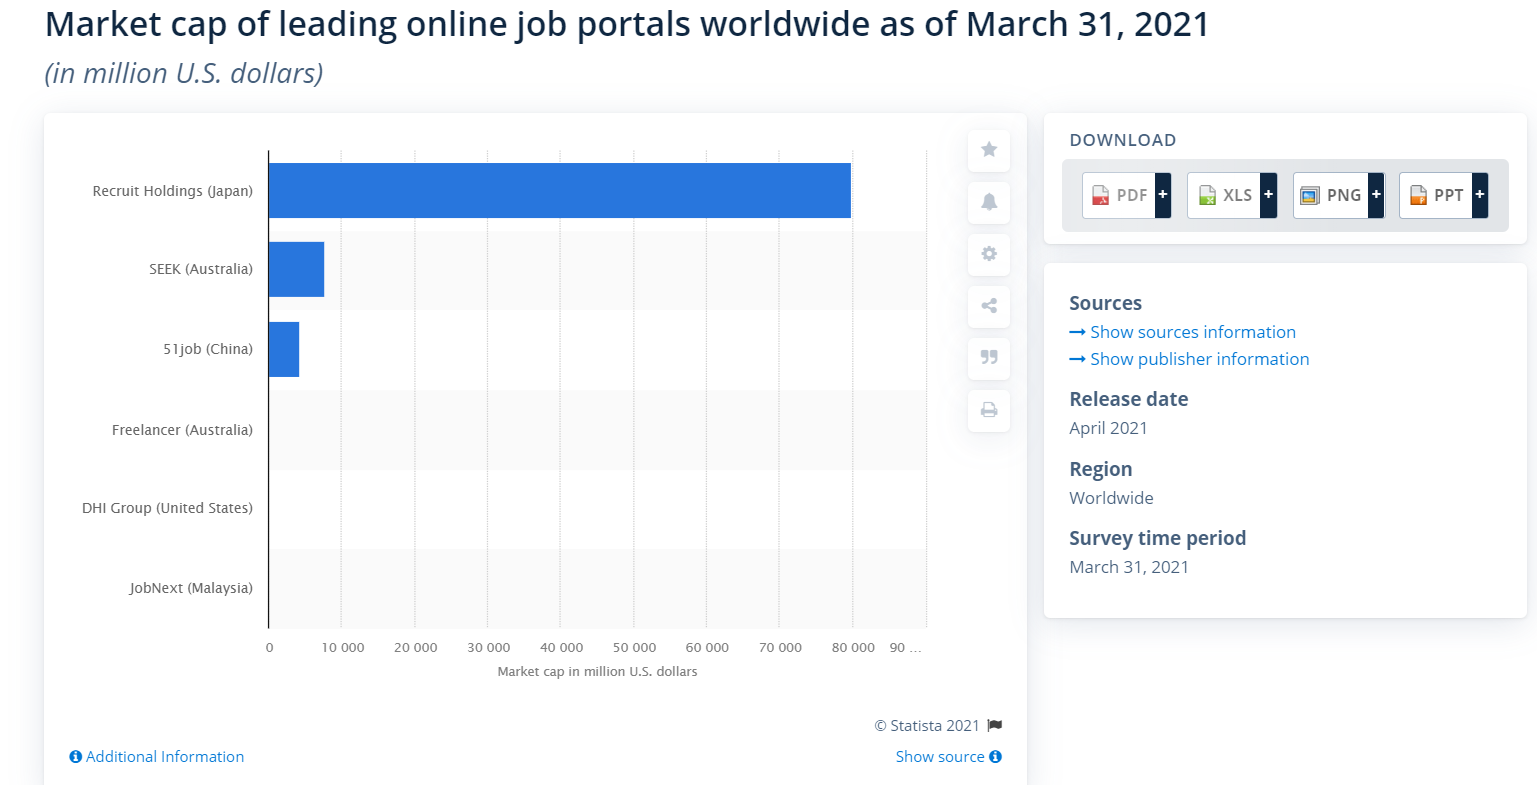 Market cap of leading online job portals